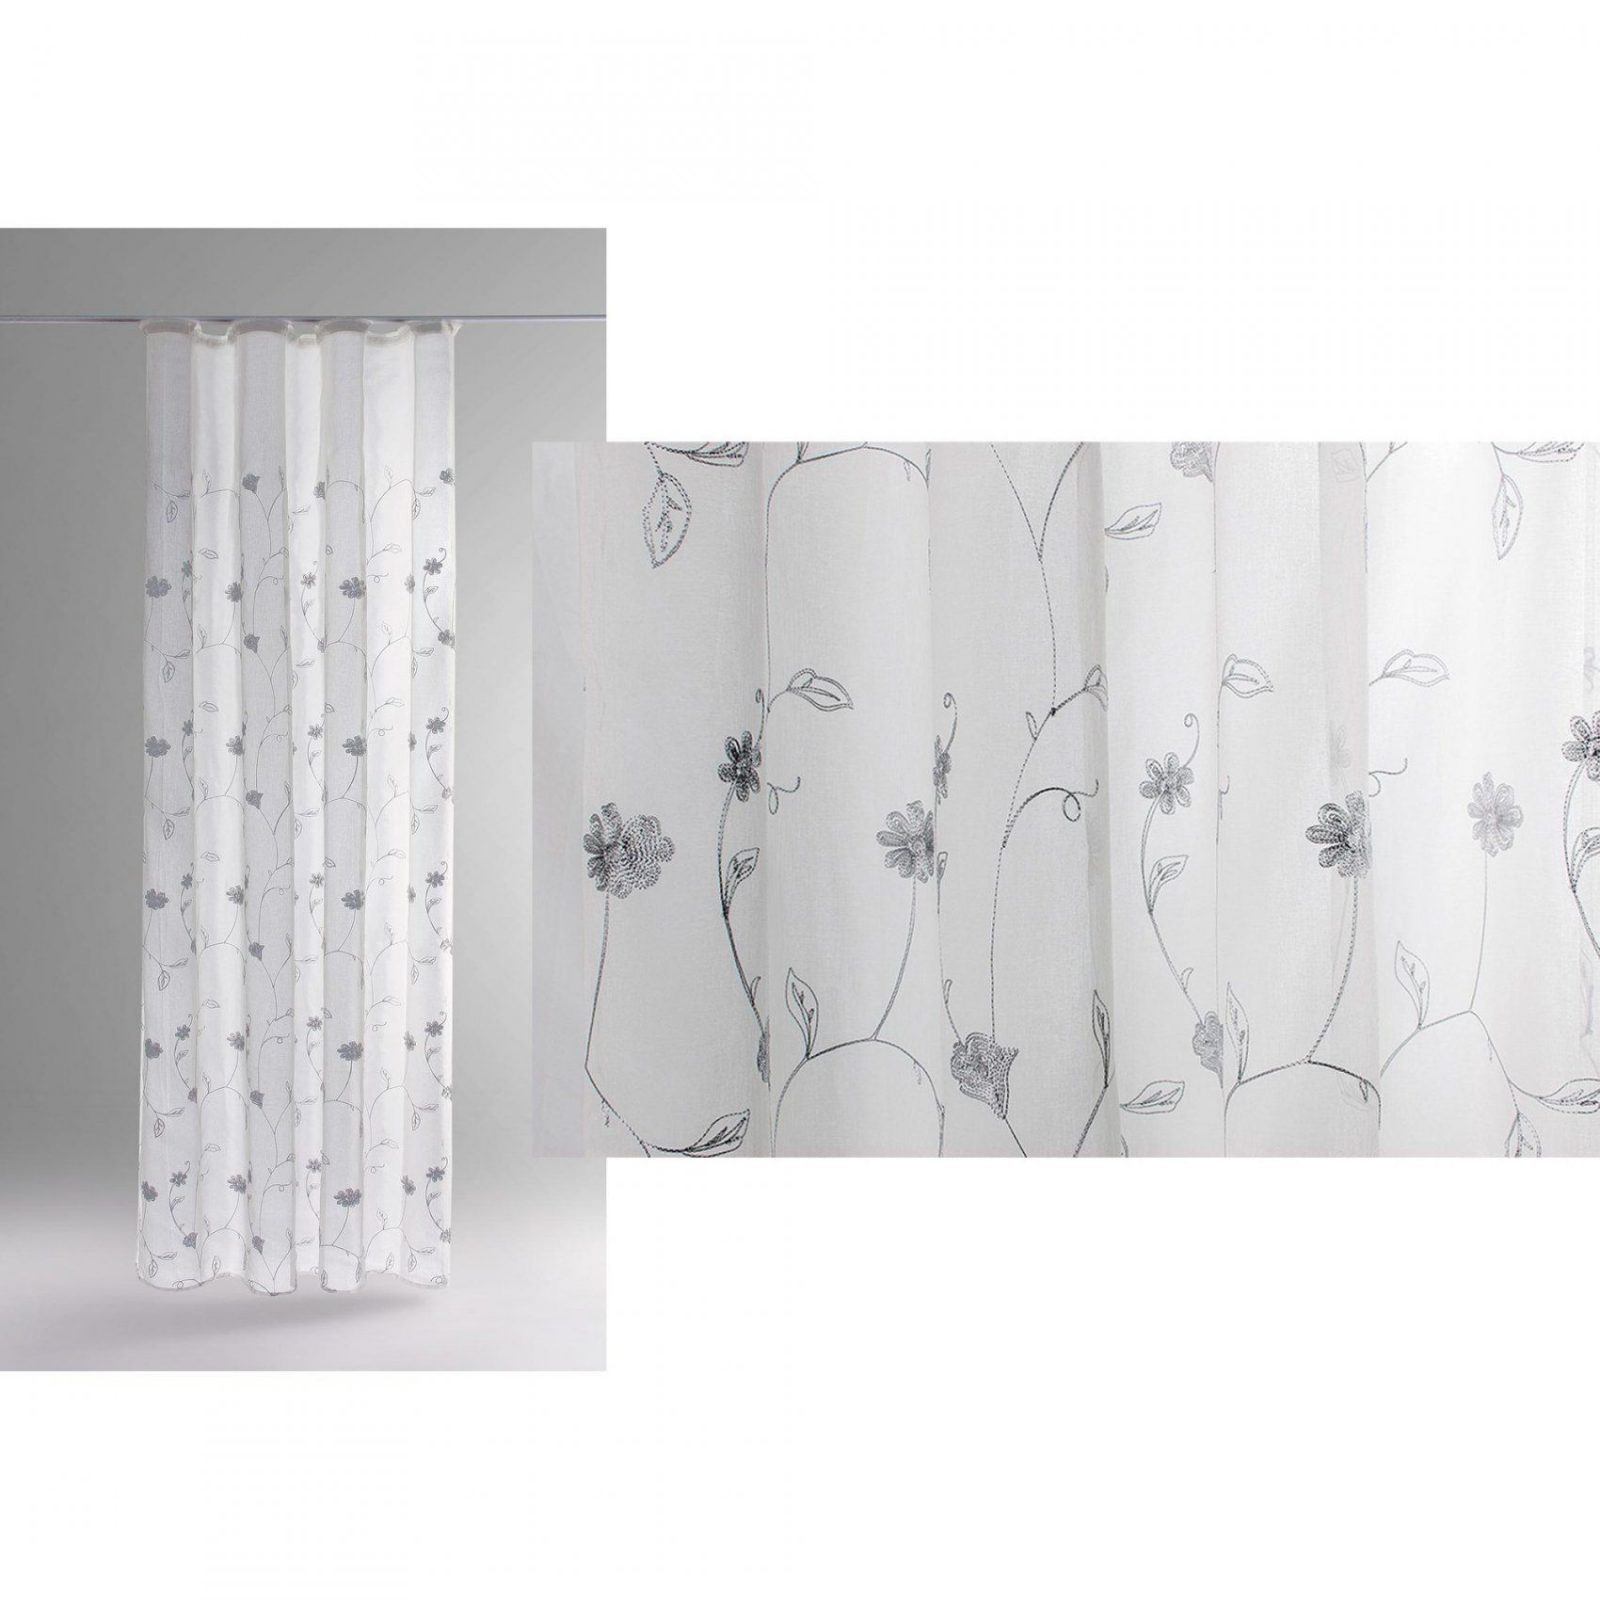 Transparente Vorhänge Mit Kräuselband  Lilashouse von Gardine Weiß Transparent Kräuselband Photo